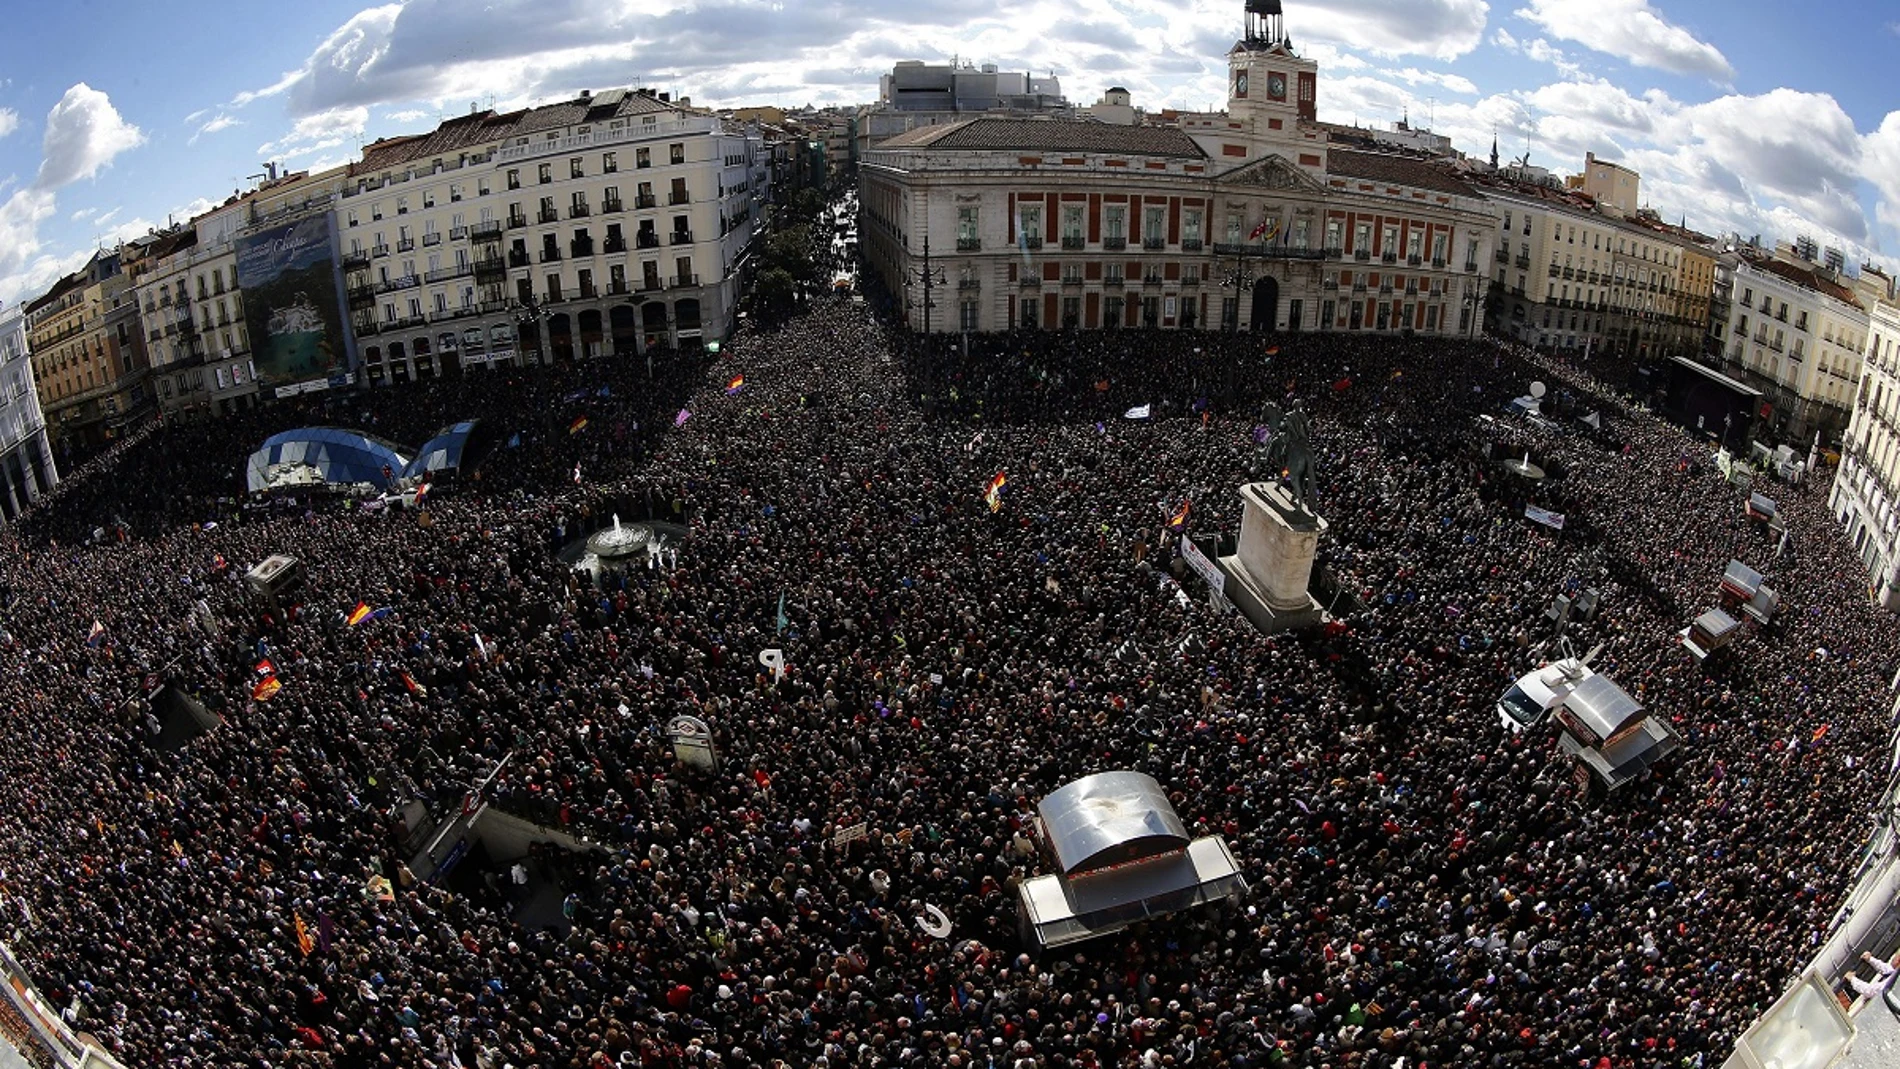 Vista de la Puerta del Sol de Madrid, donde miles de personas esperan de que Pablo Iglesias pronuncie su discurso 